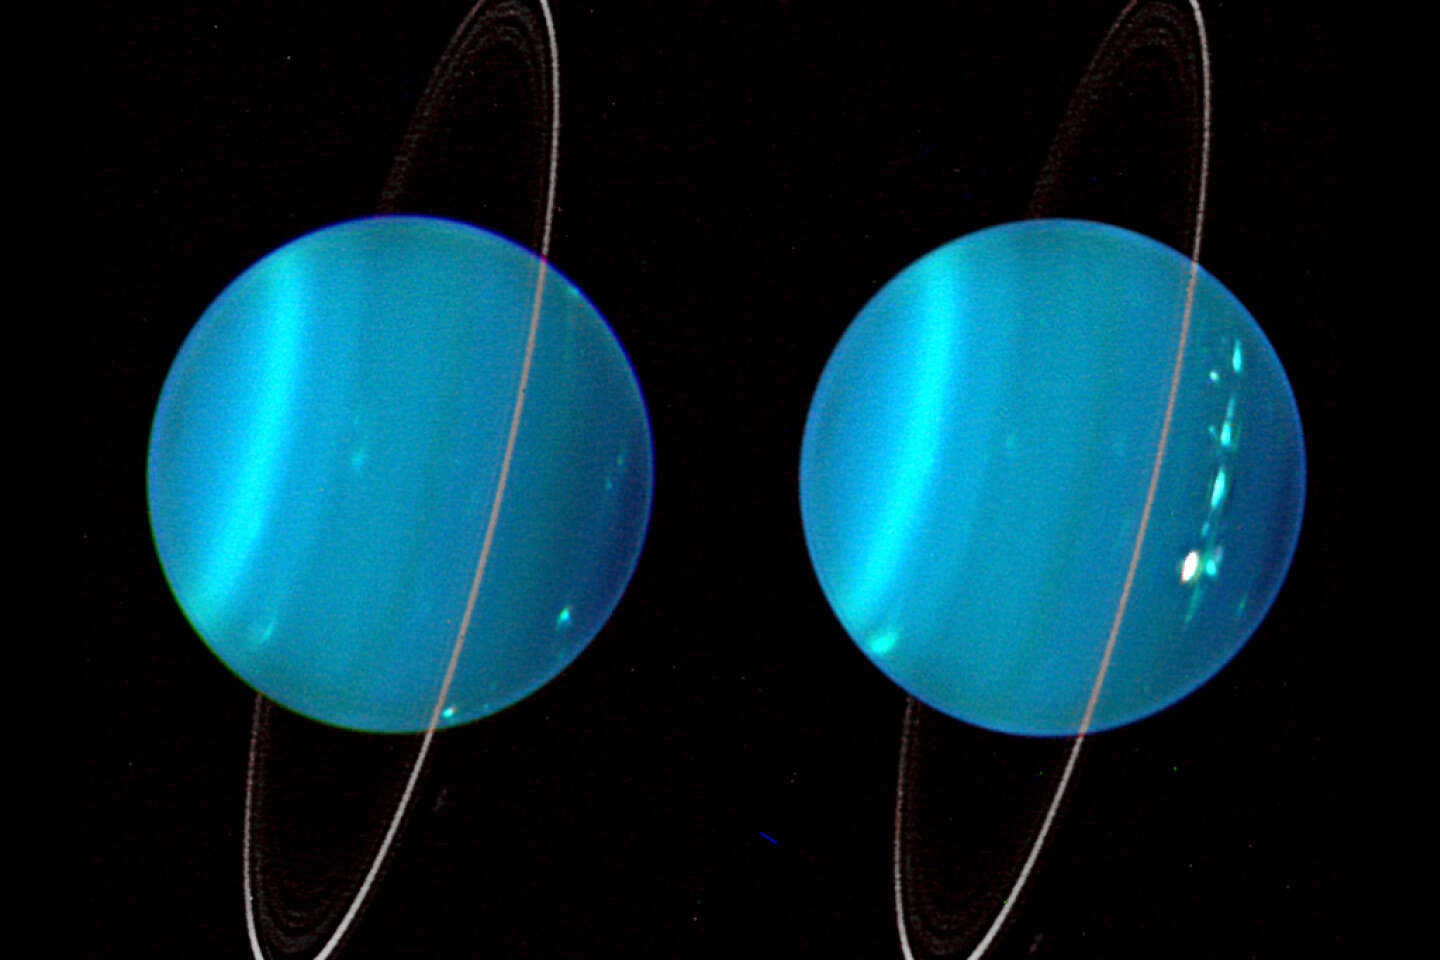 Exploración de Urano en 2044, se acaba el tiempo para prepararse para esta ambiciosa misión